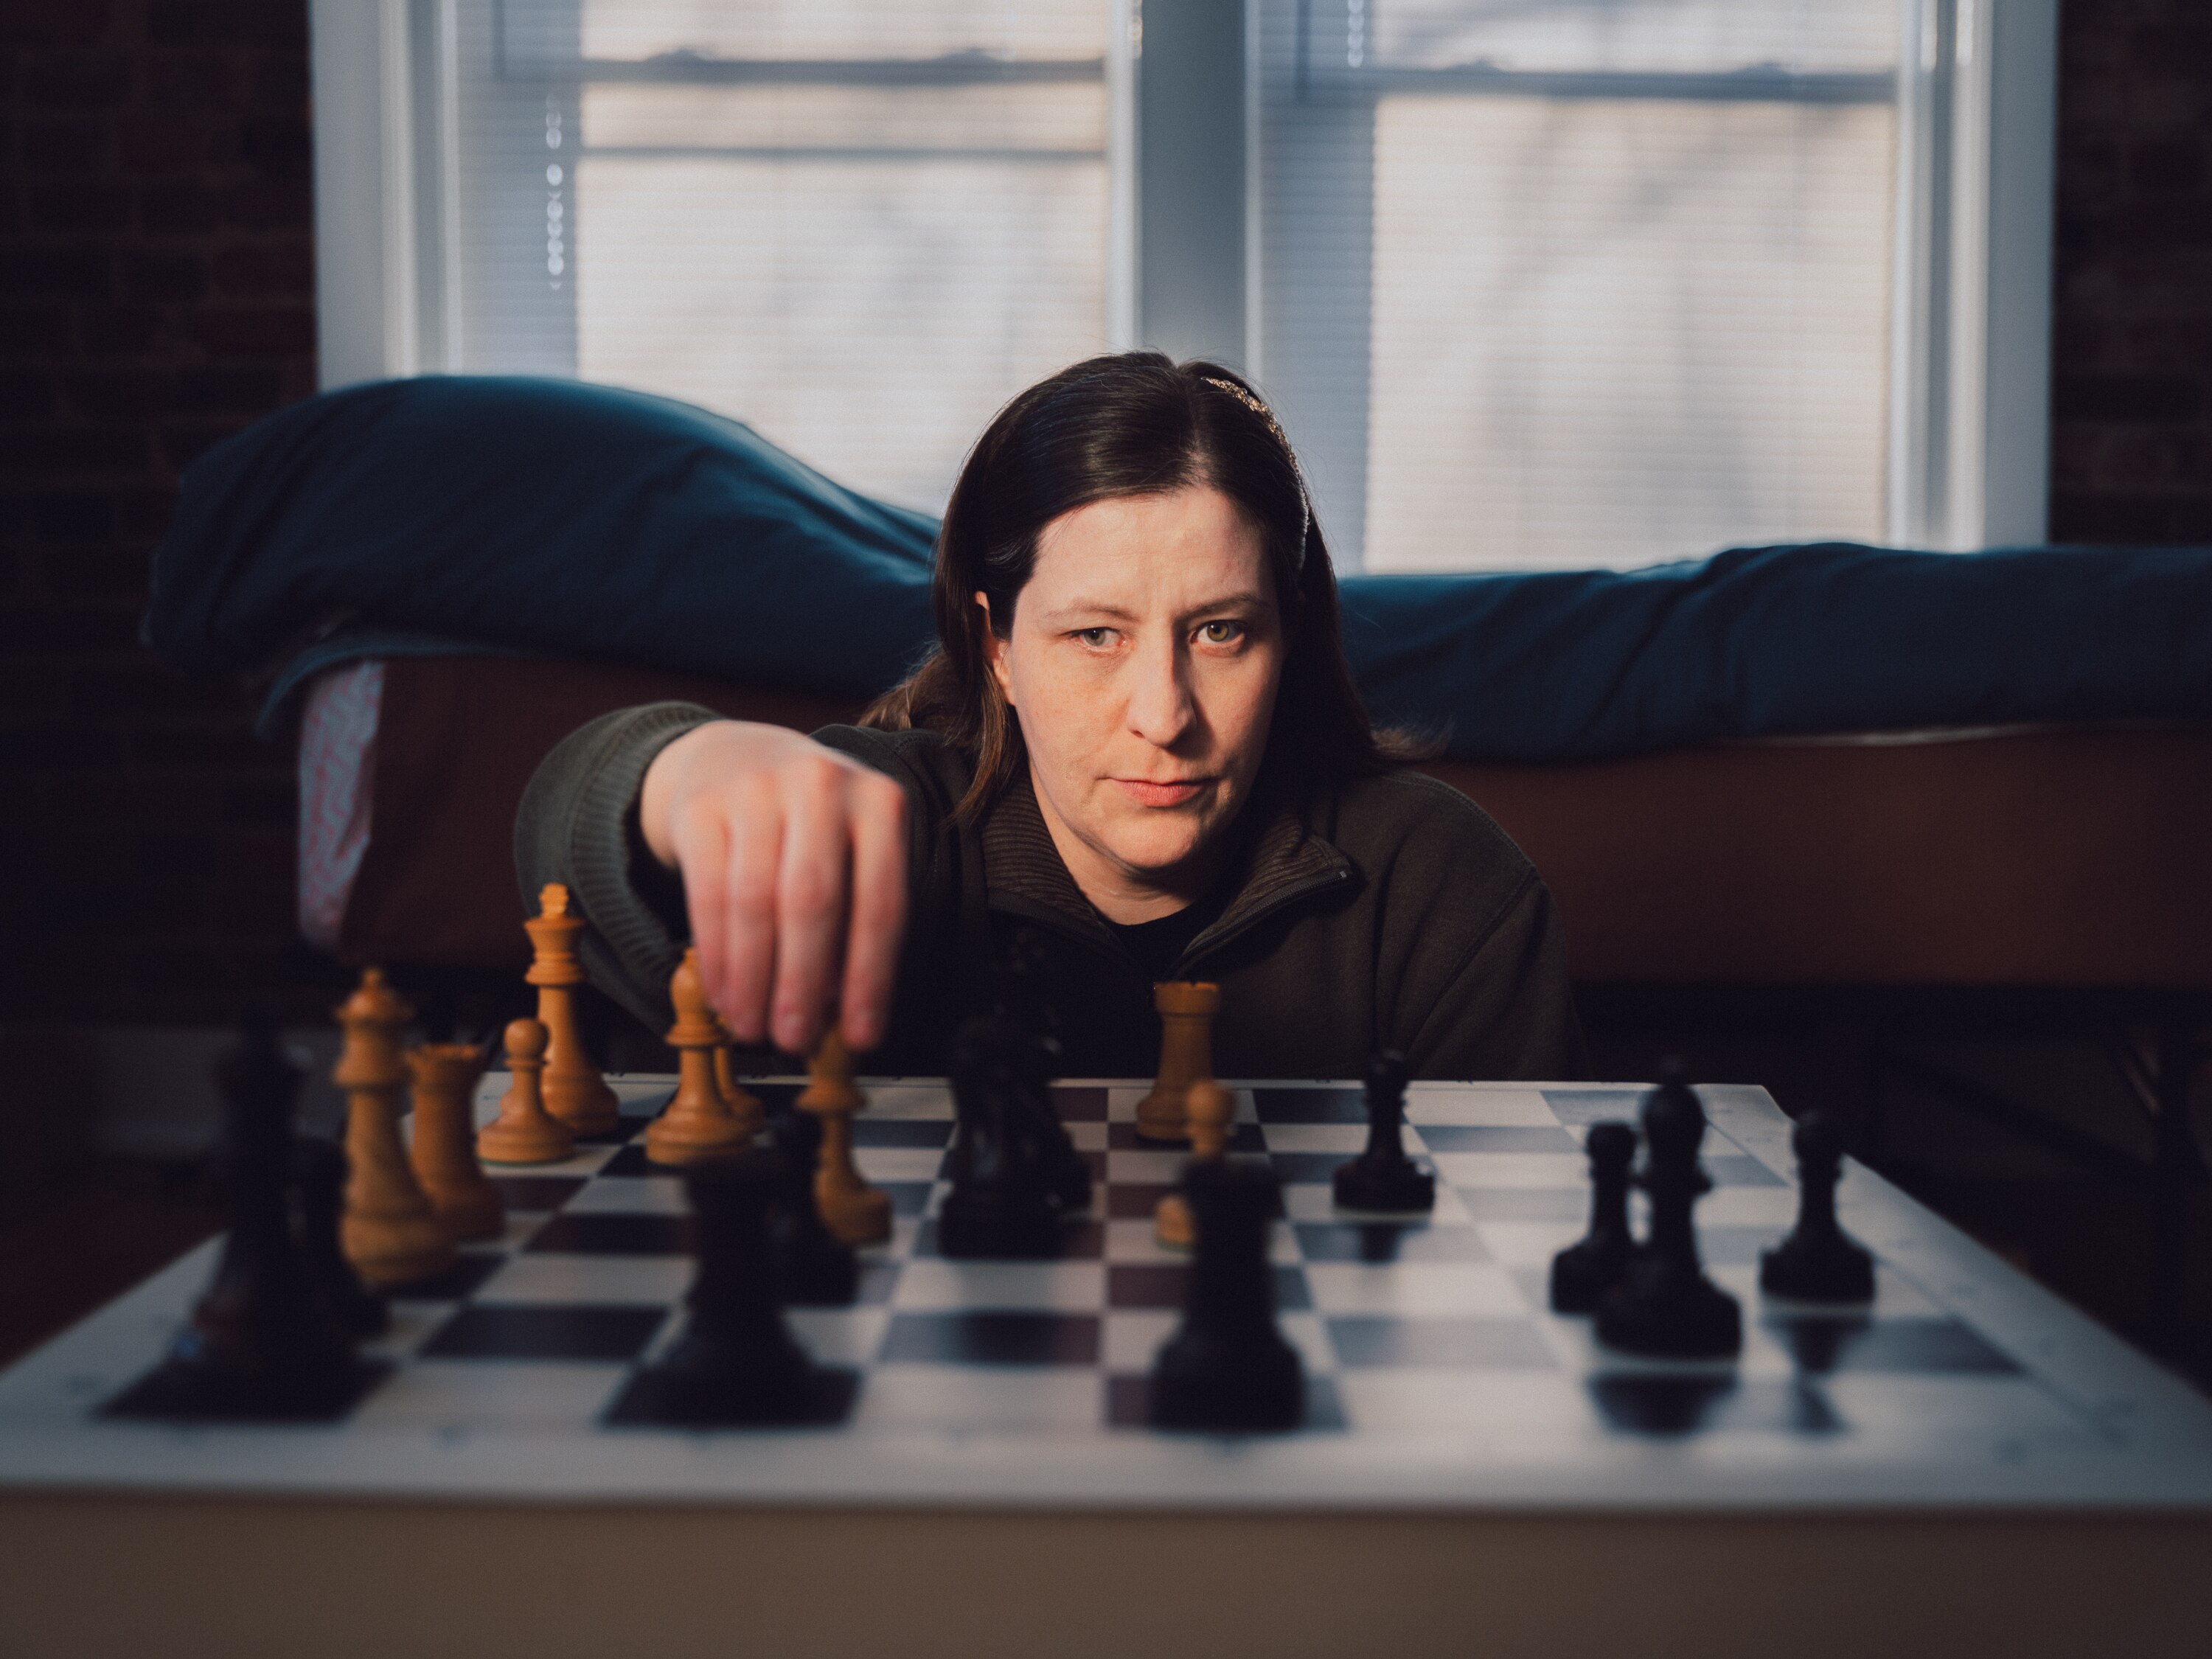 Ela é uma campeã de xadrez que mal consegue enxergar o tabuleiro